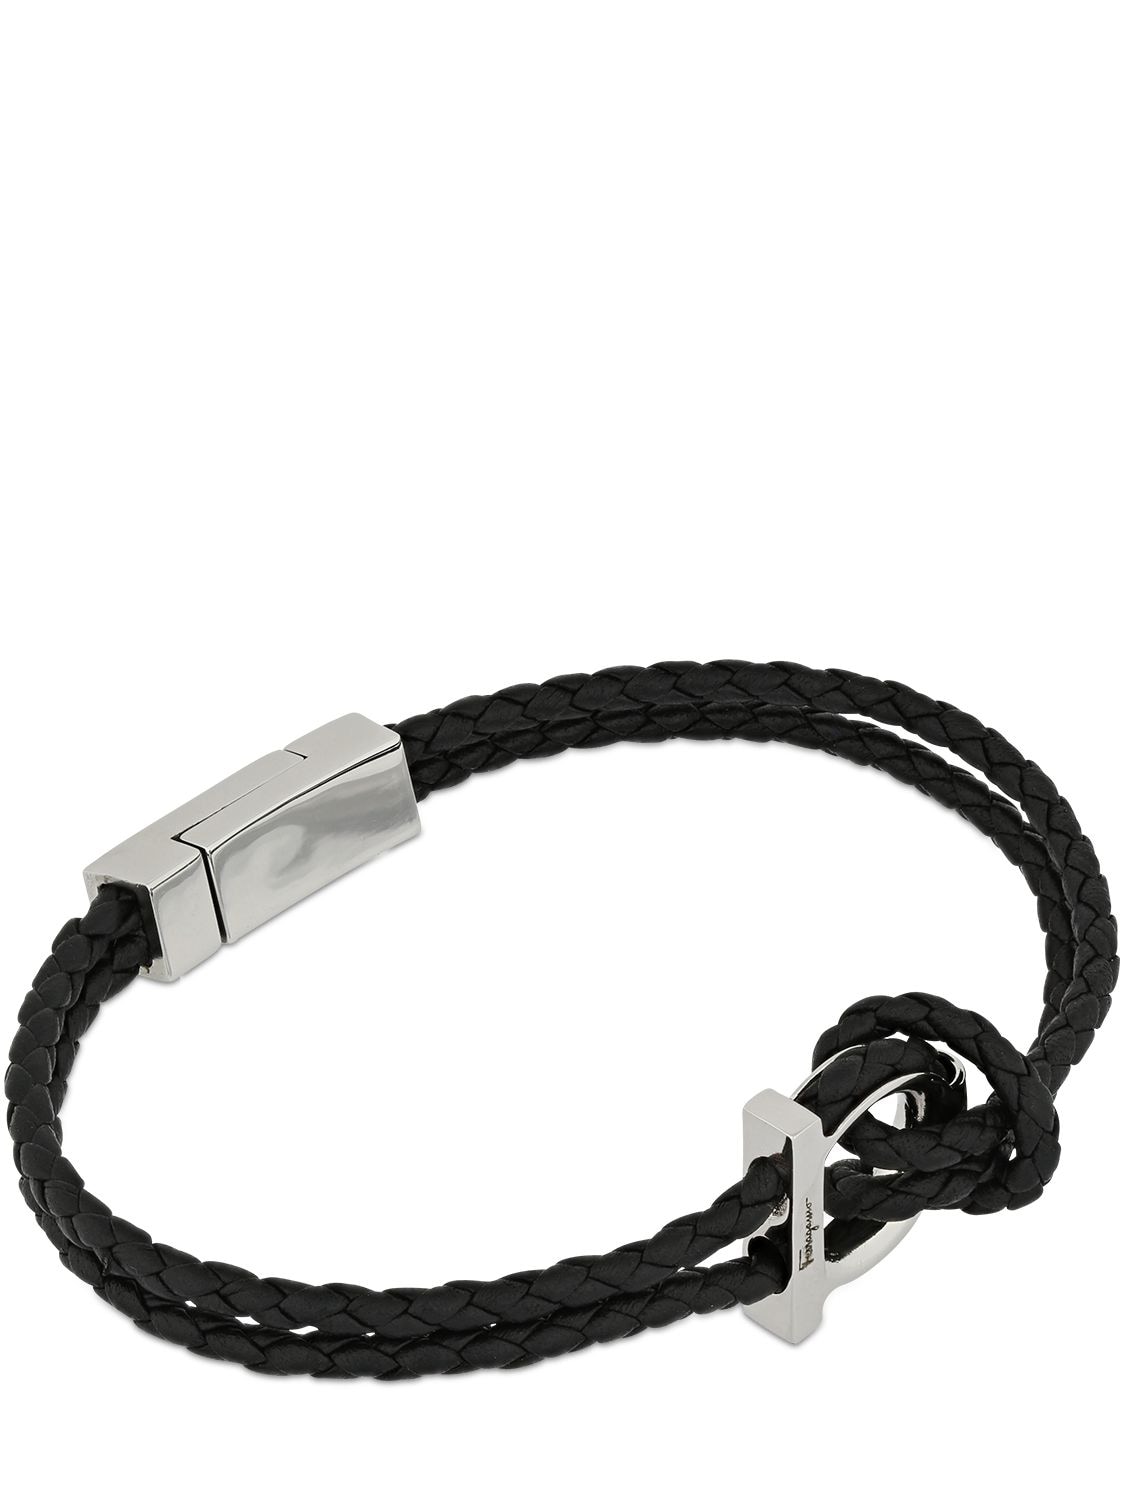 Shop Ferragamo 19cm Gancio Braided Leather Bracelet In Black